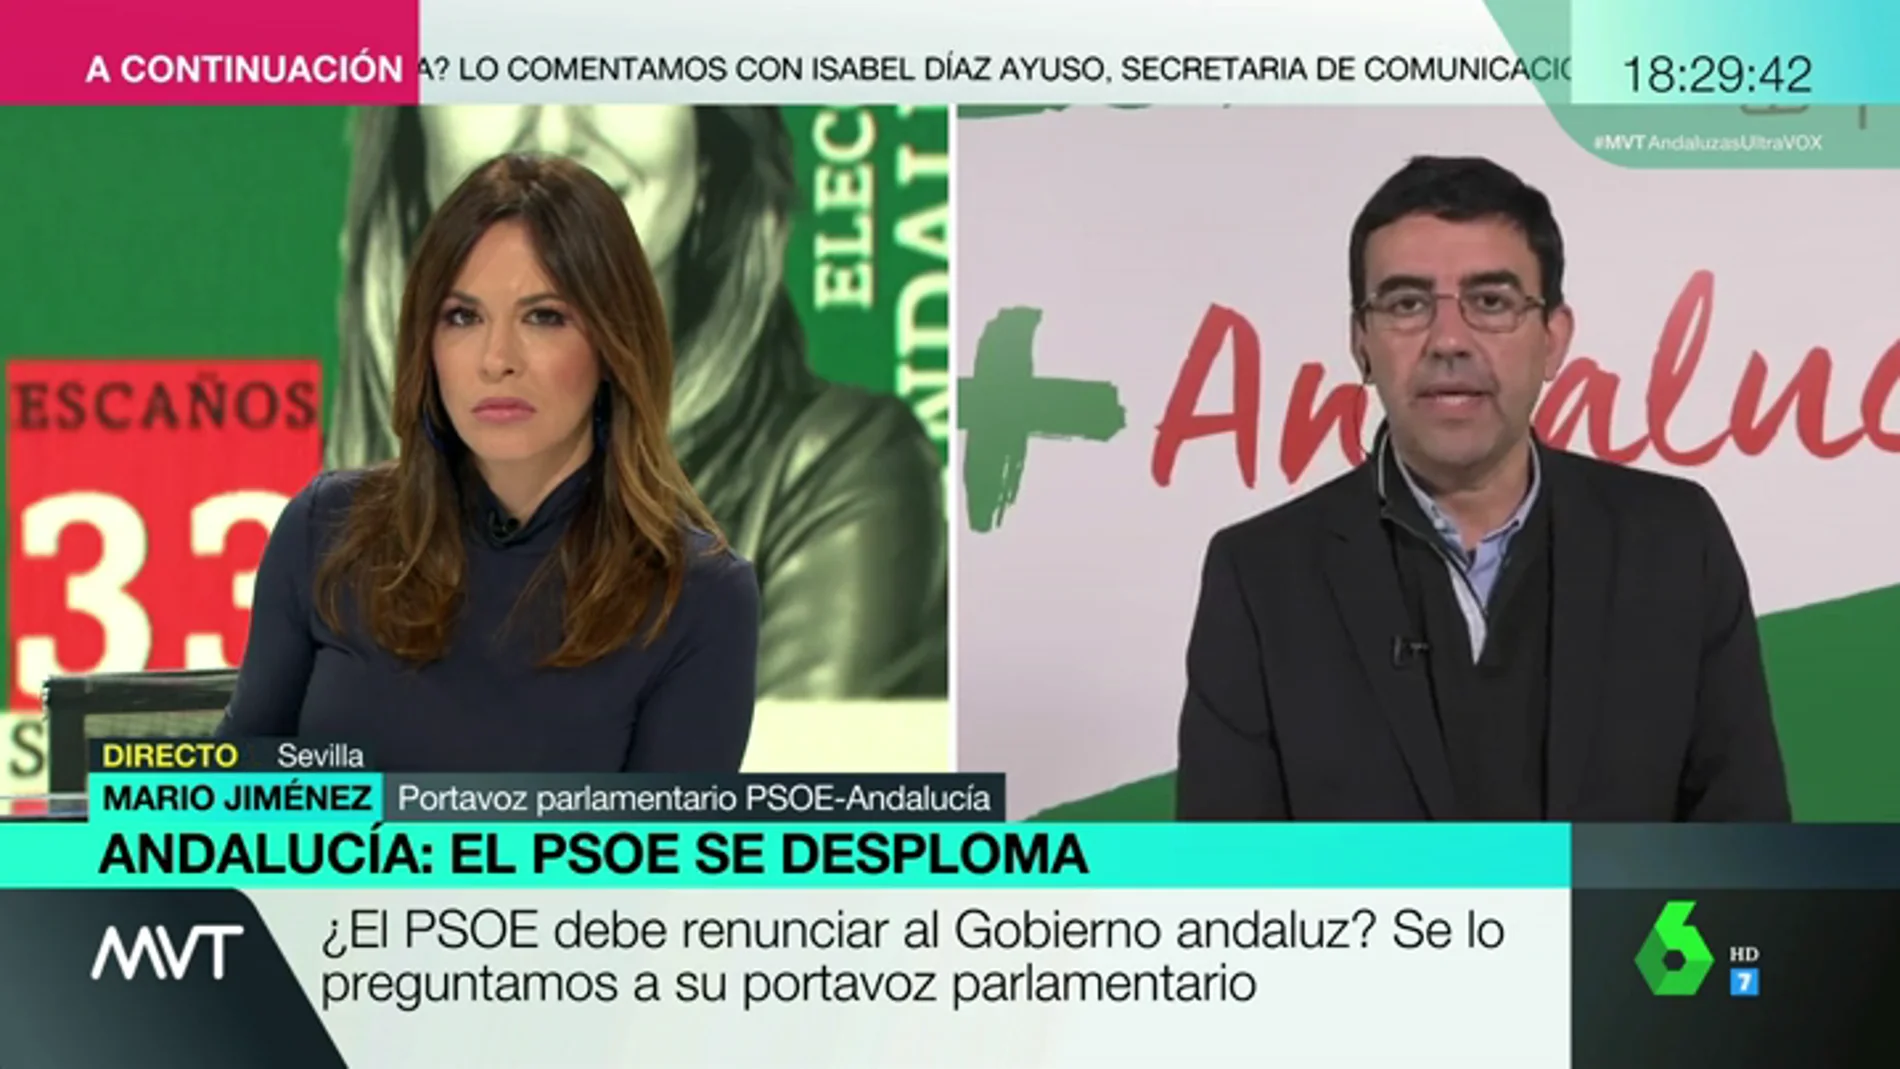 Mario Jiménez: "No sería razonable que la dirección del partido no estuviera respaldando al PSOE de Andalucía"